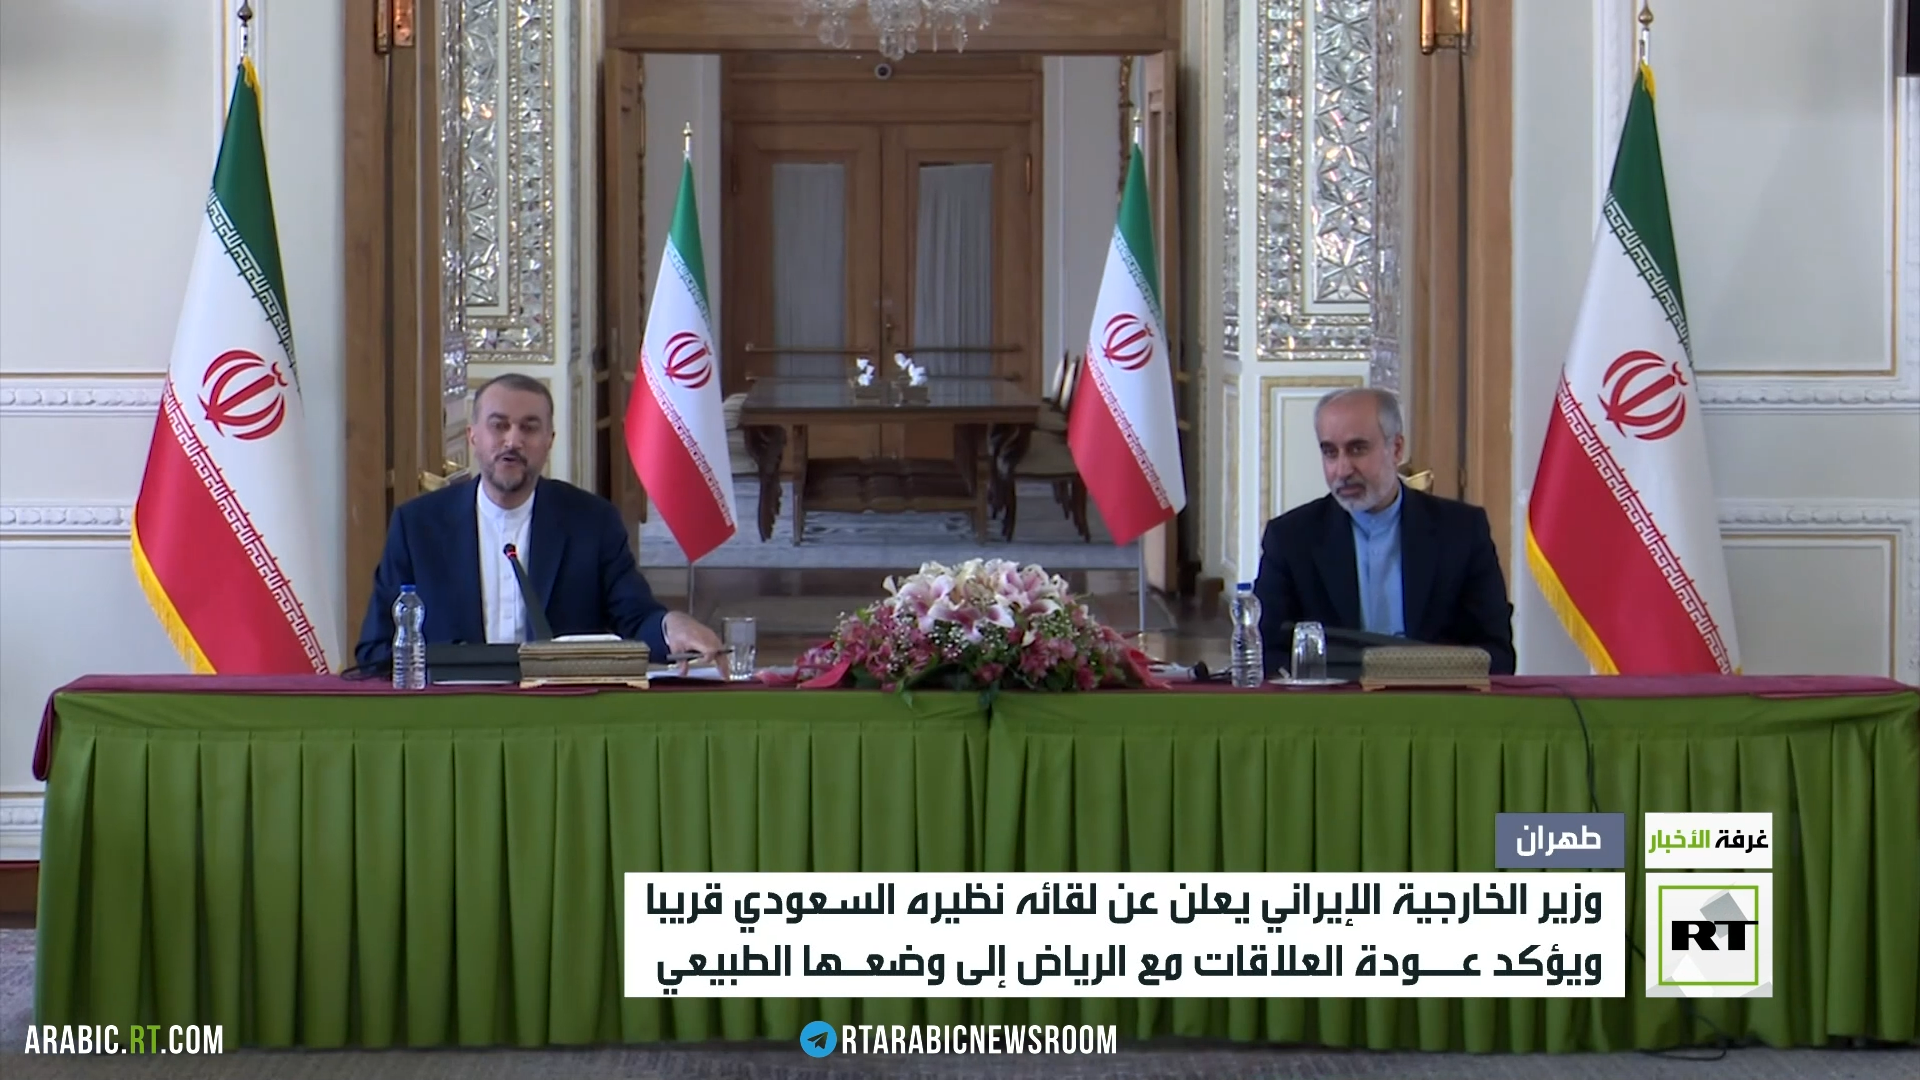 طهران: رئيسي يرحب بدعوة العاهل السعودي لزيارة الرياض